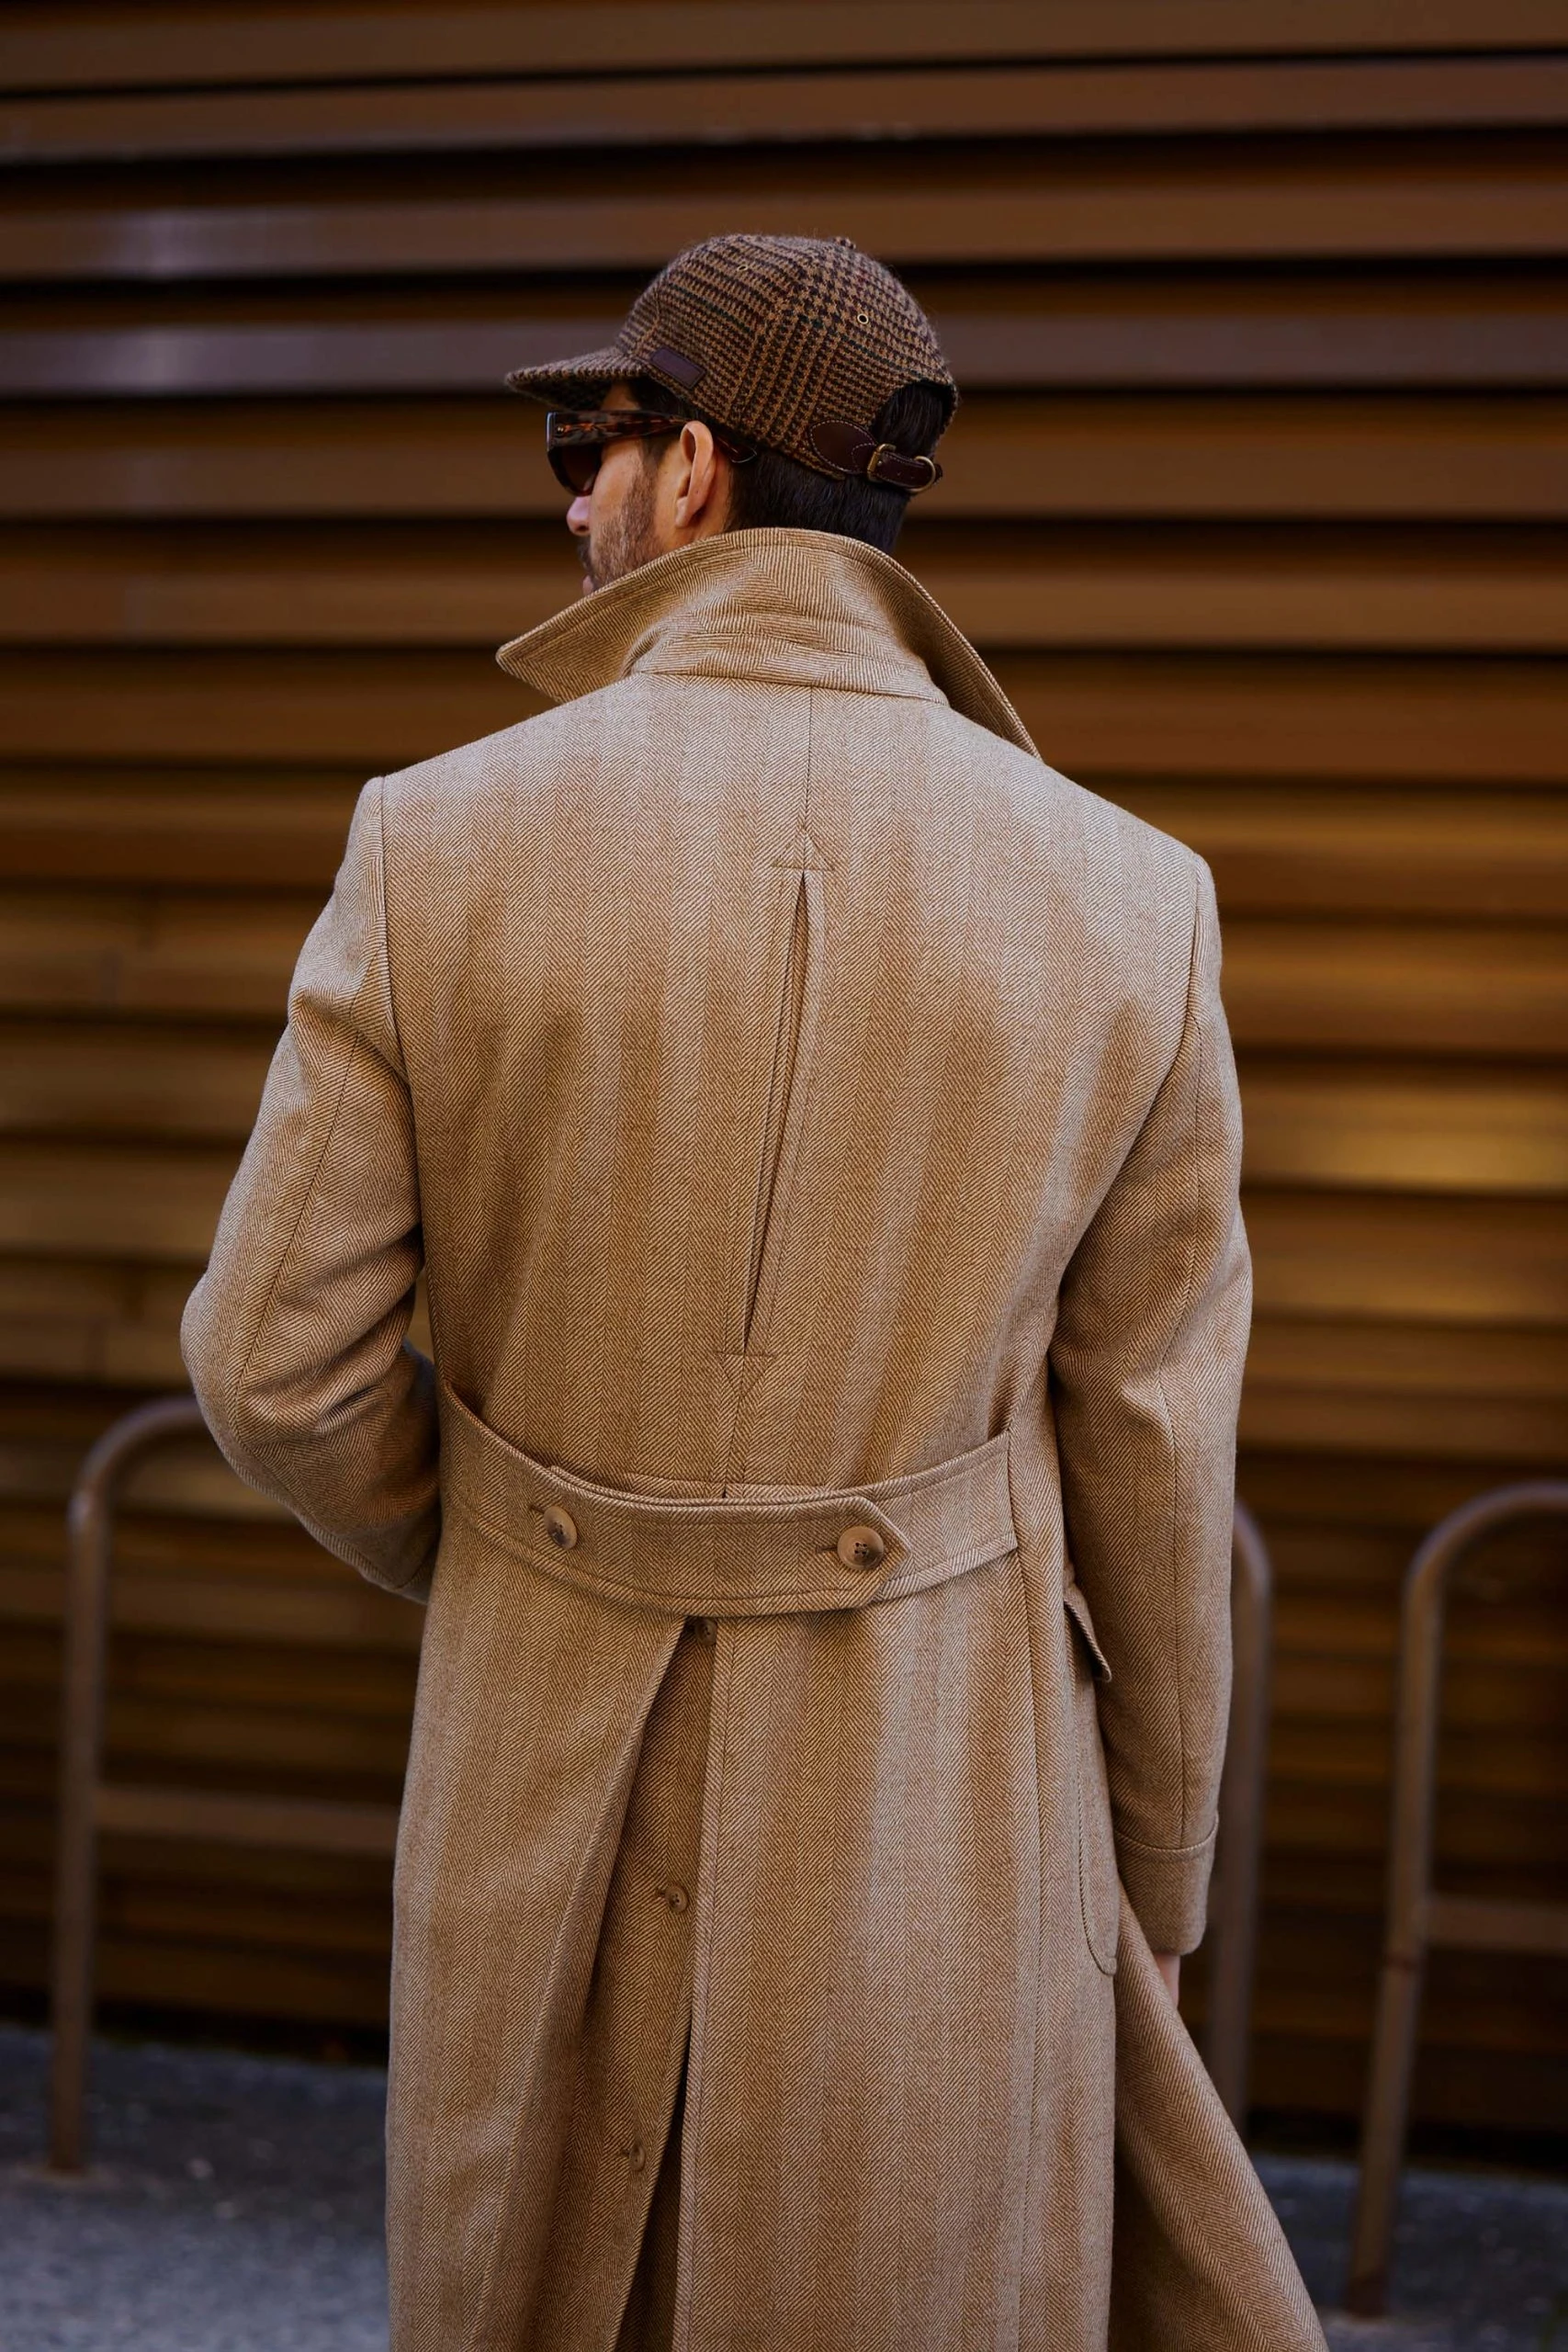 carlos domord at pitti uomo wearing a beige custom made herringbone mond overcoat